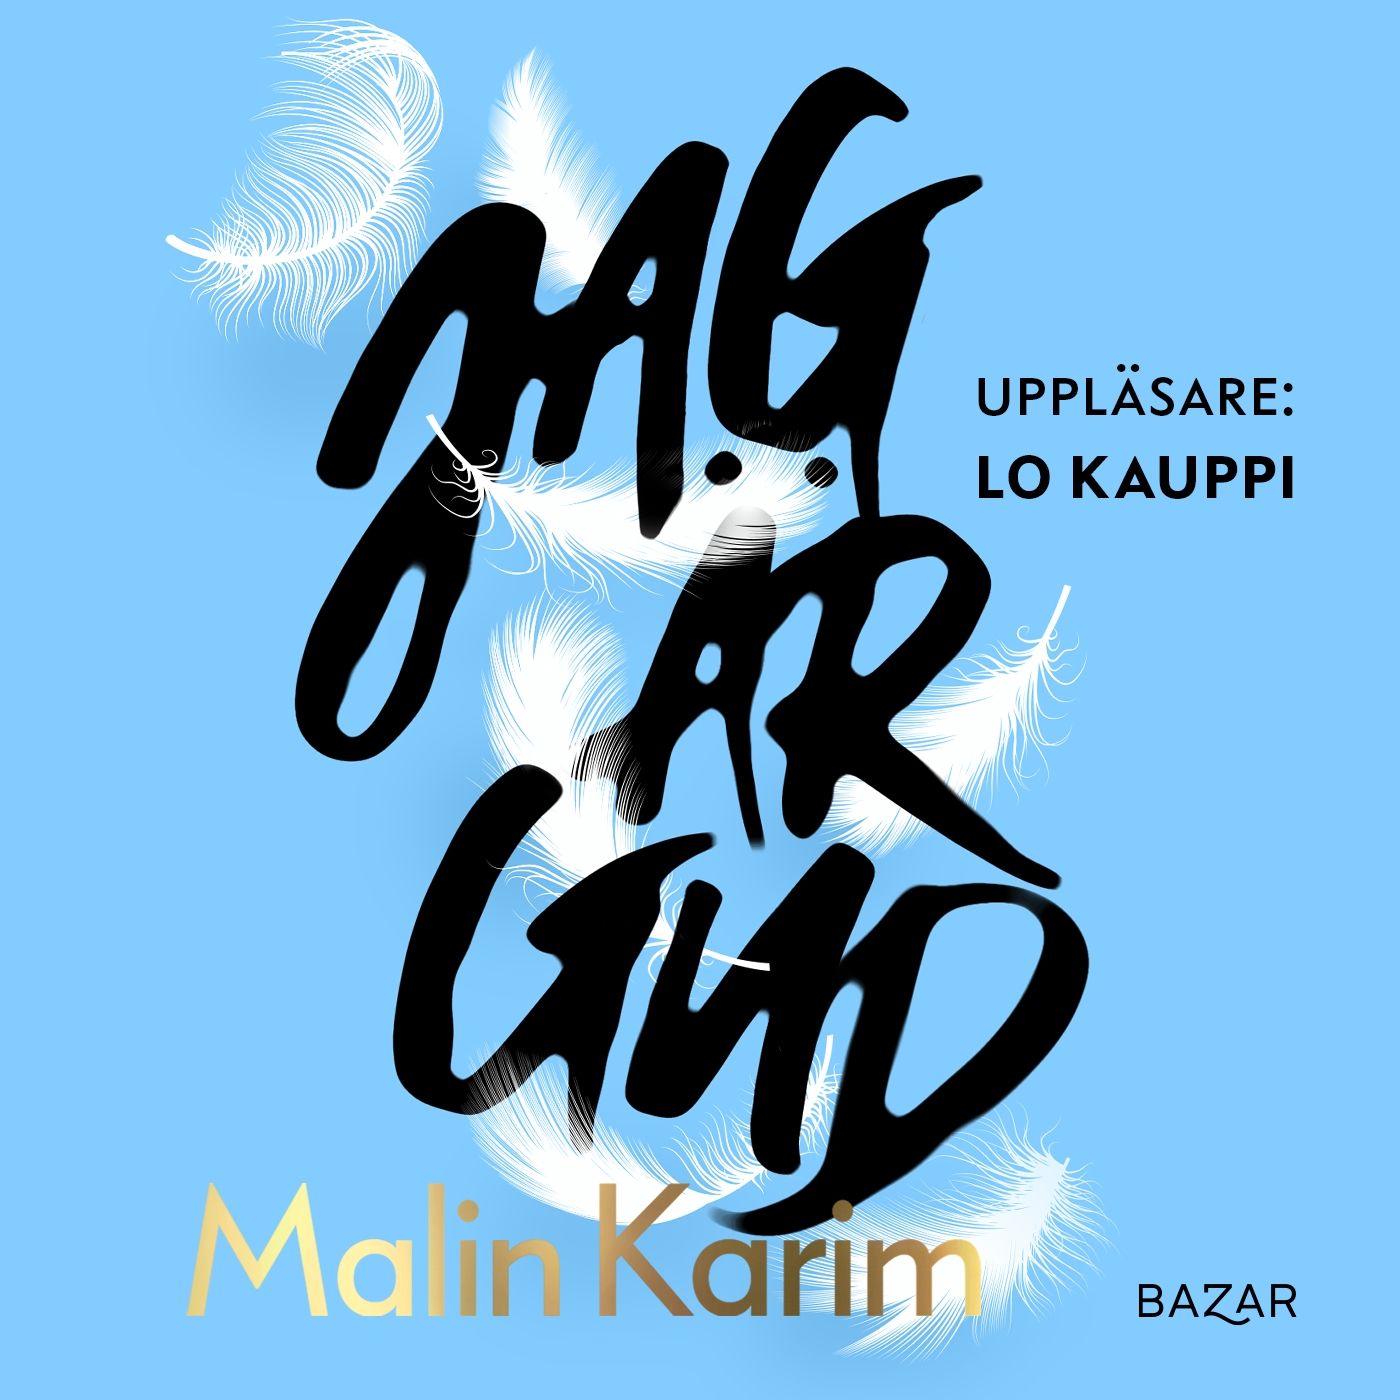 Jag är Gud, ljudbok av Malin Karim